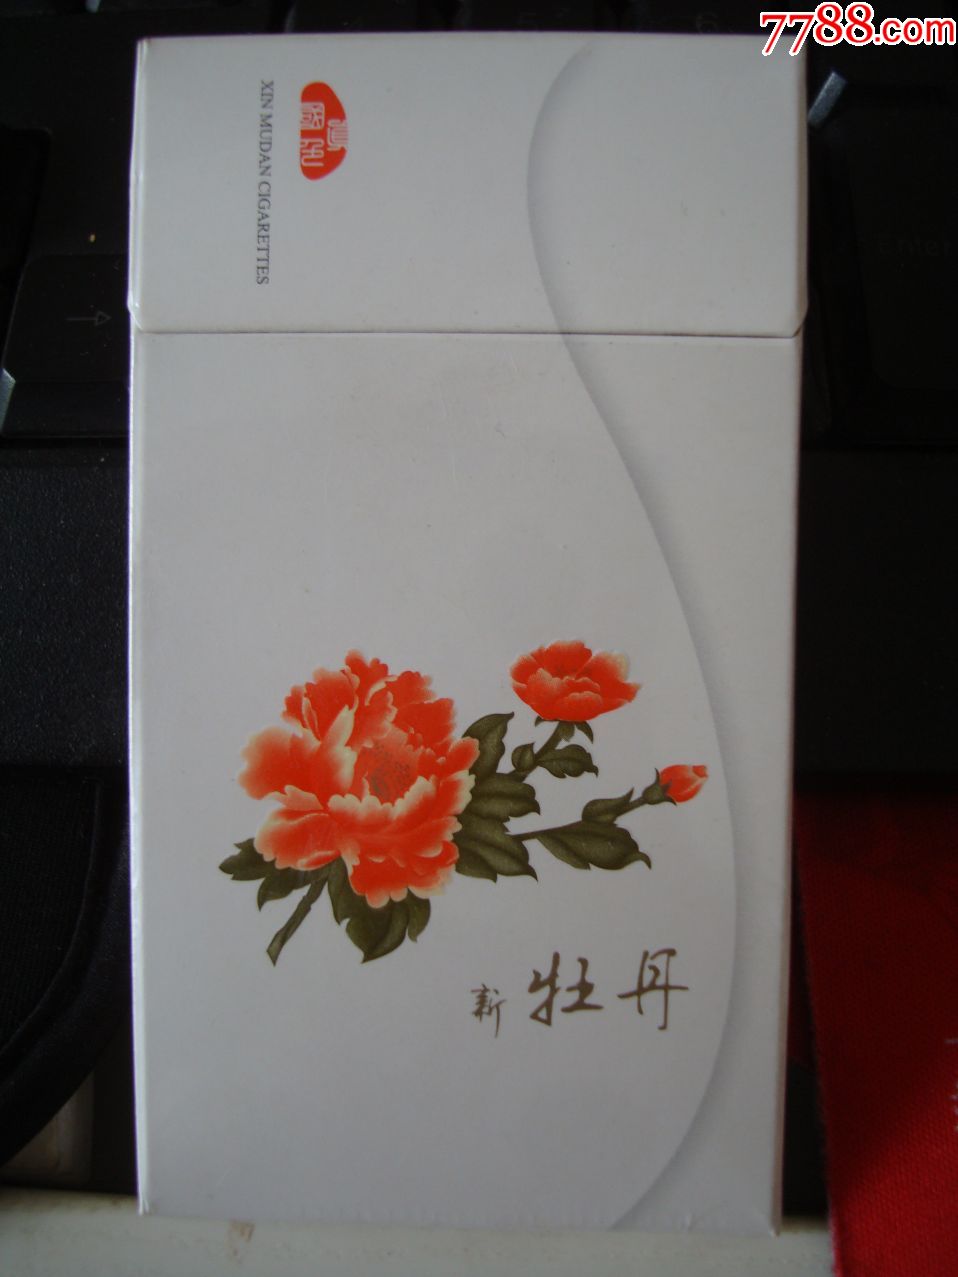 新牡丹――专*出囗――细支-se59750371-烟标/烟盒